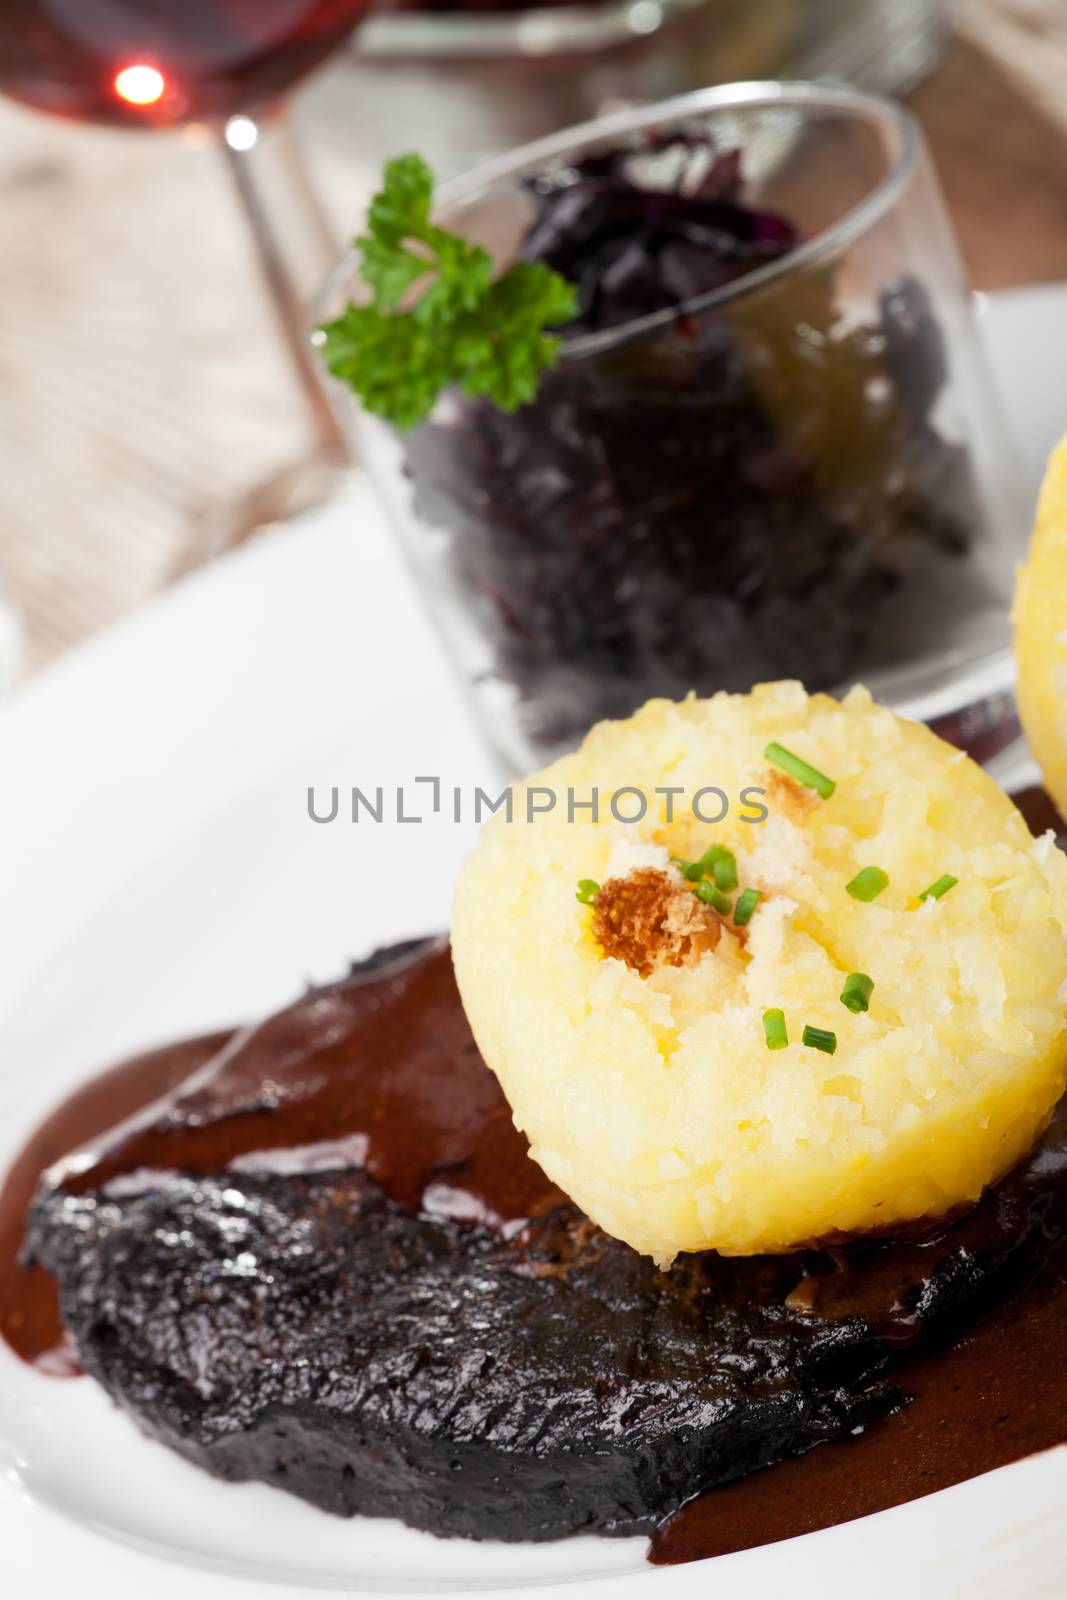 sauerbraten meat and potato dumpling by bernjuer